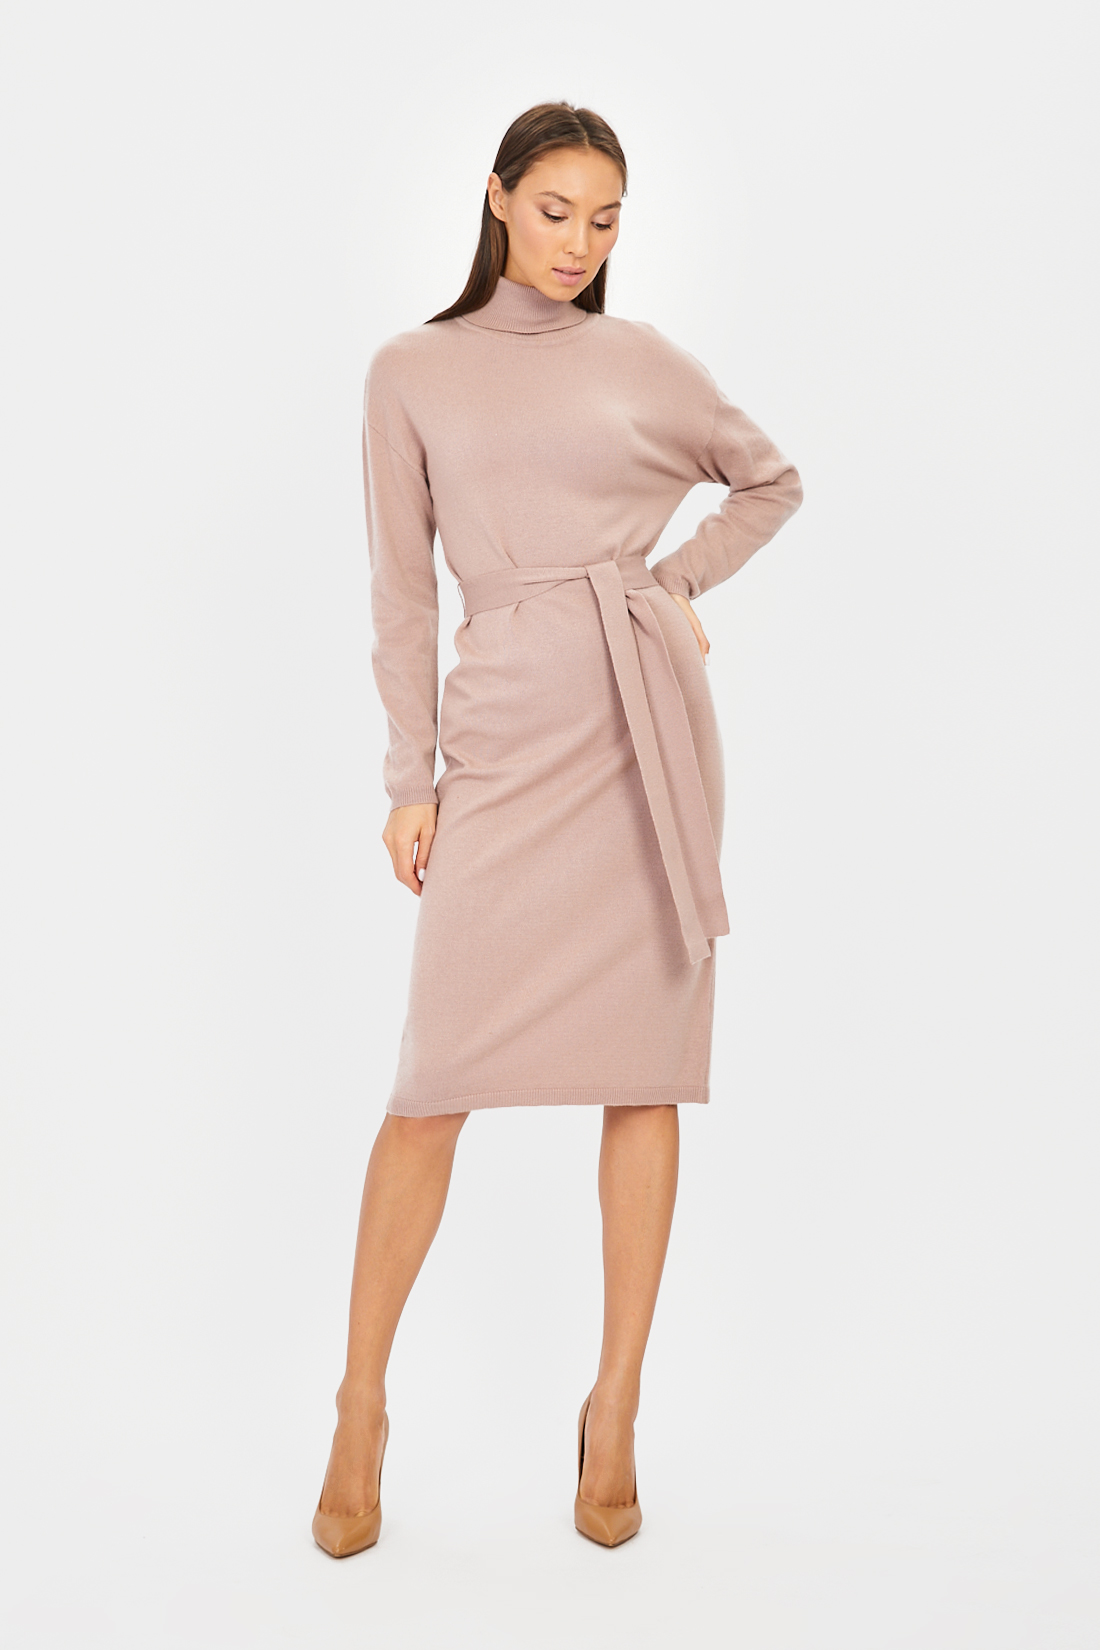 Платье (арт. baon B451505), размер L, цвет розовый Платье (арт. baon B451505) - фото 1